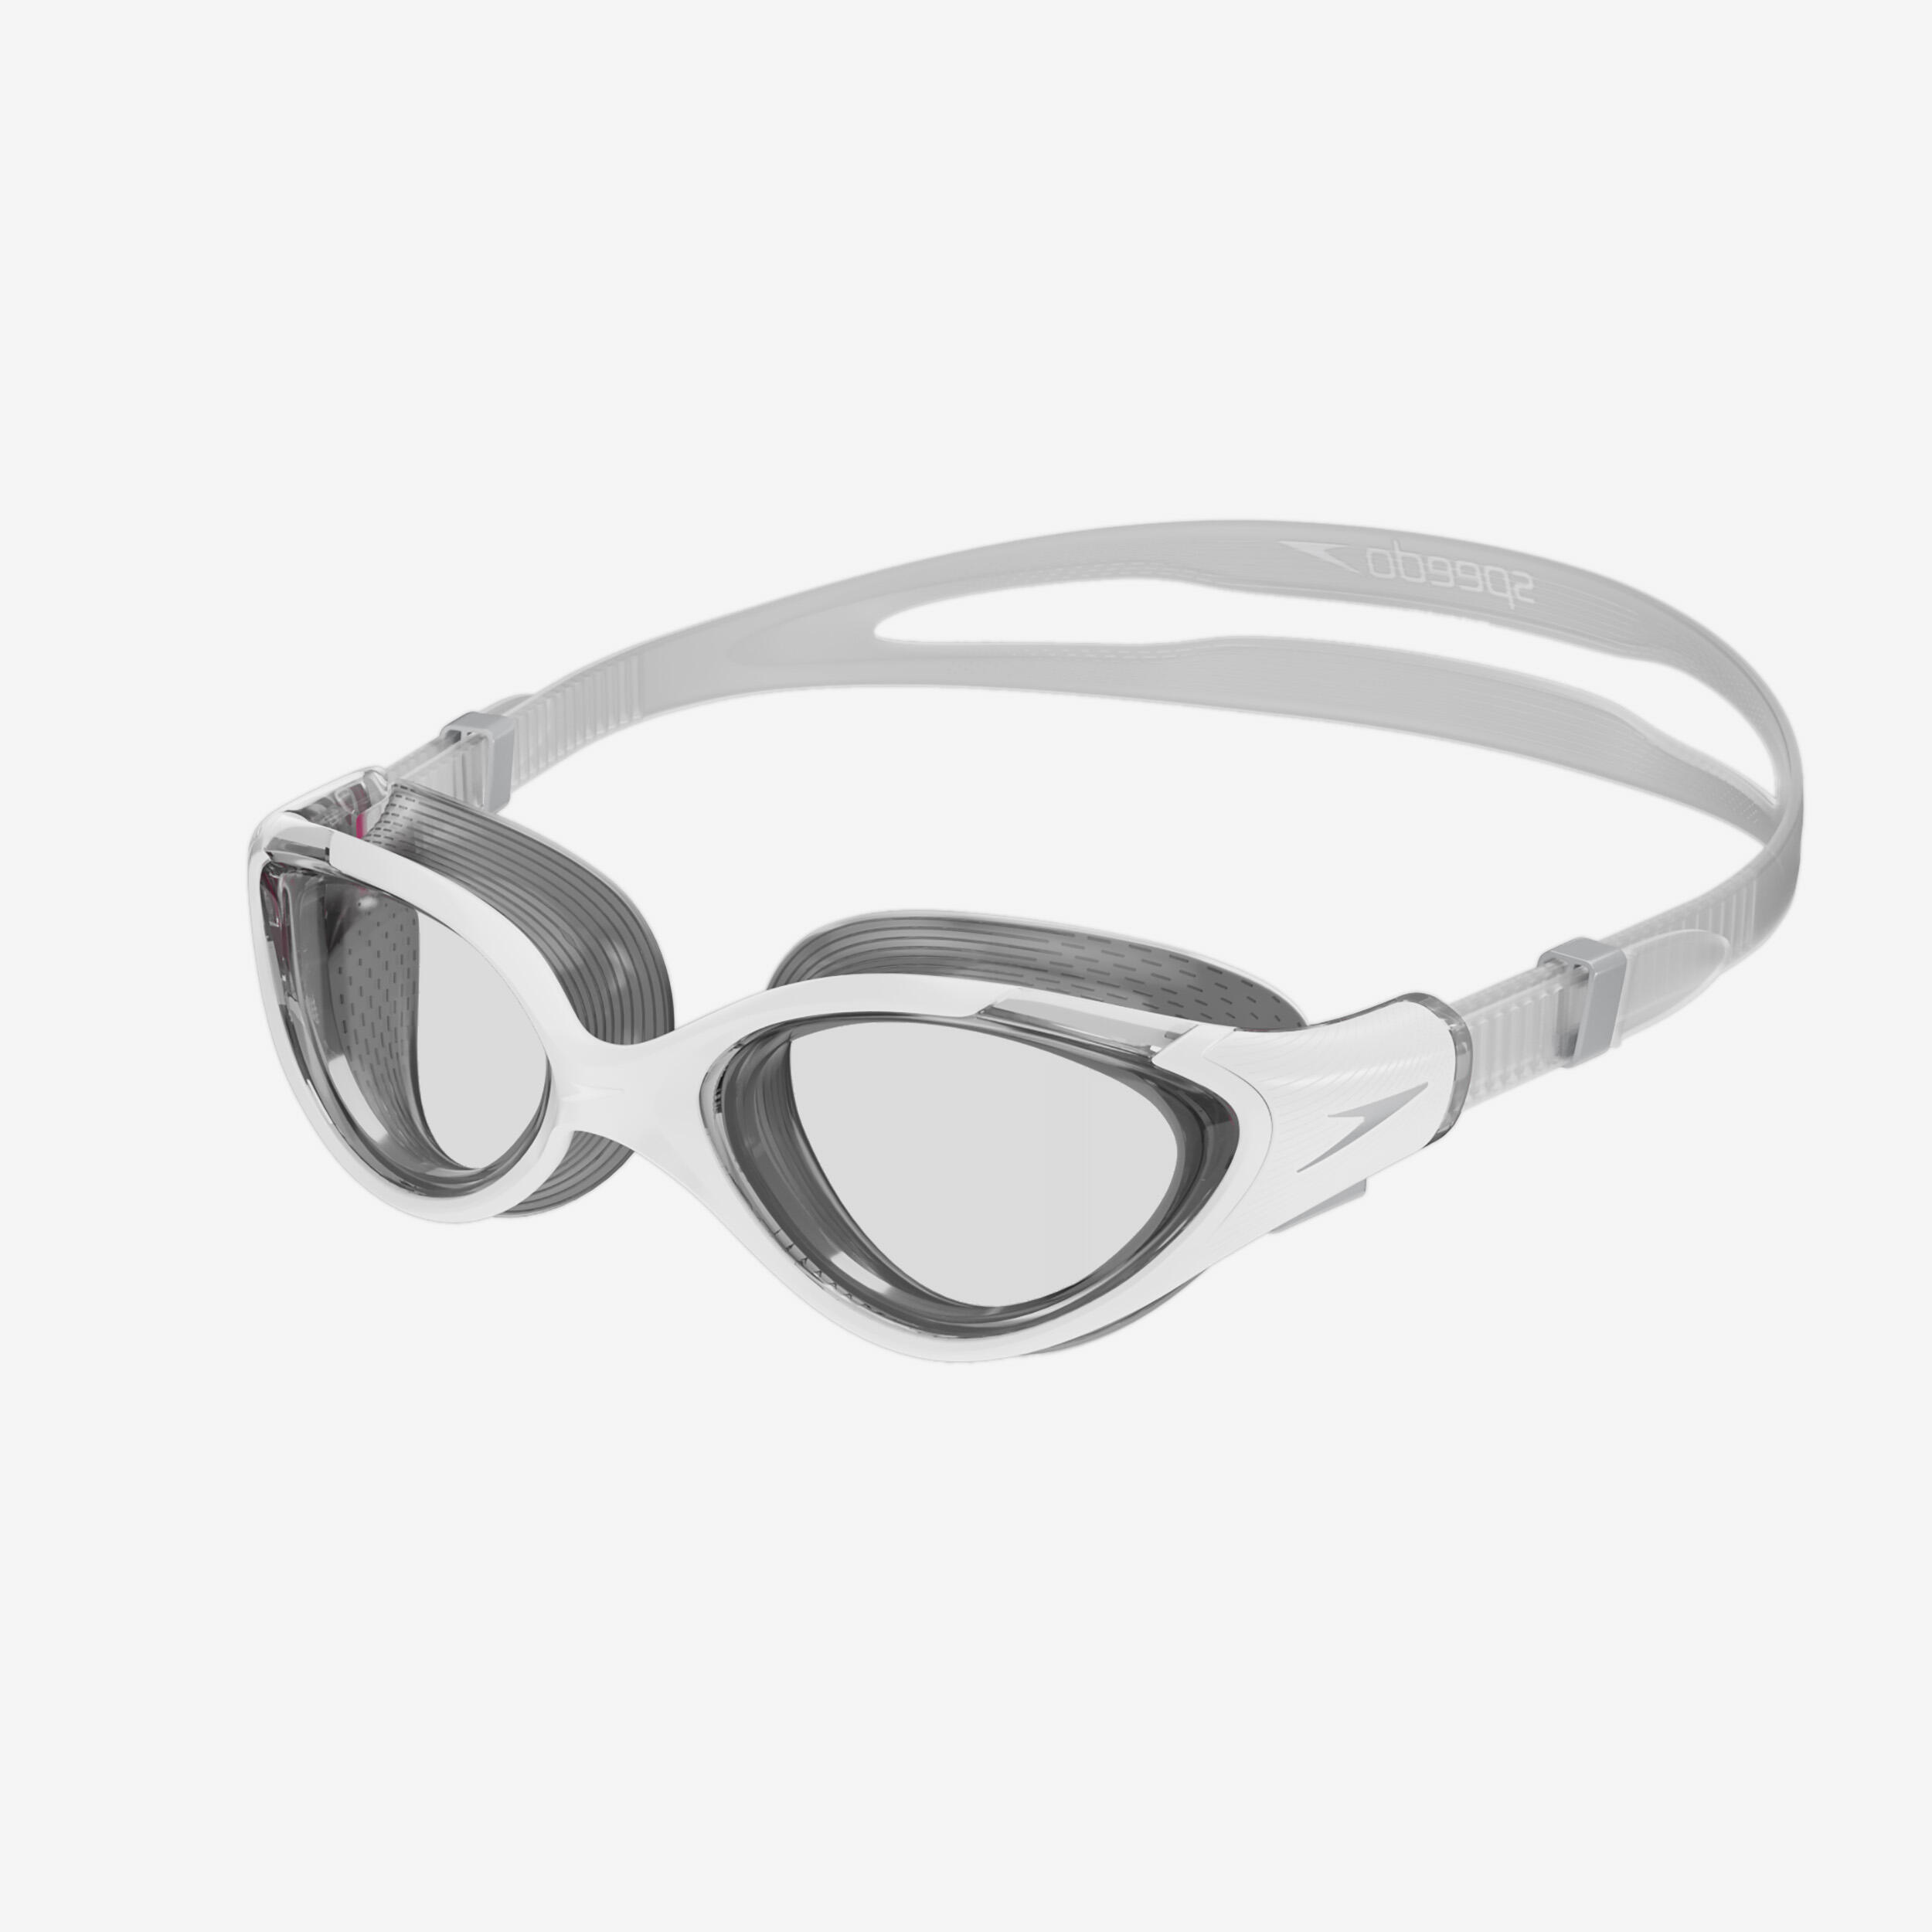 Women's swimming goggles SPEEDO BIOFUSE 2.0 white grey 1/4